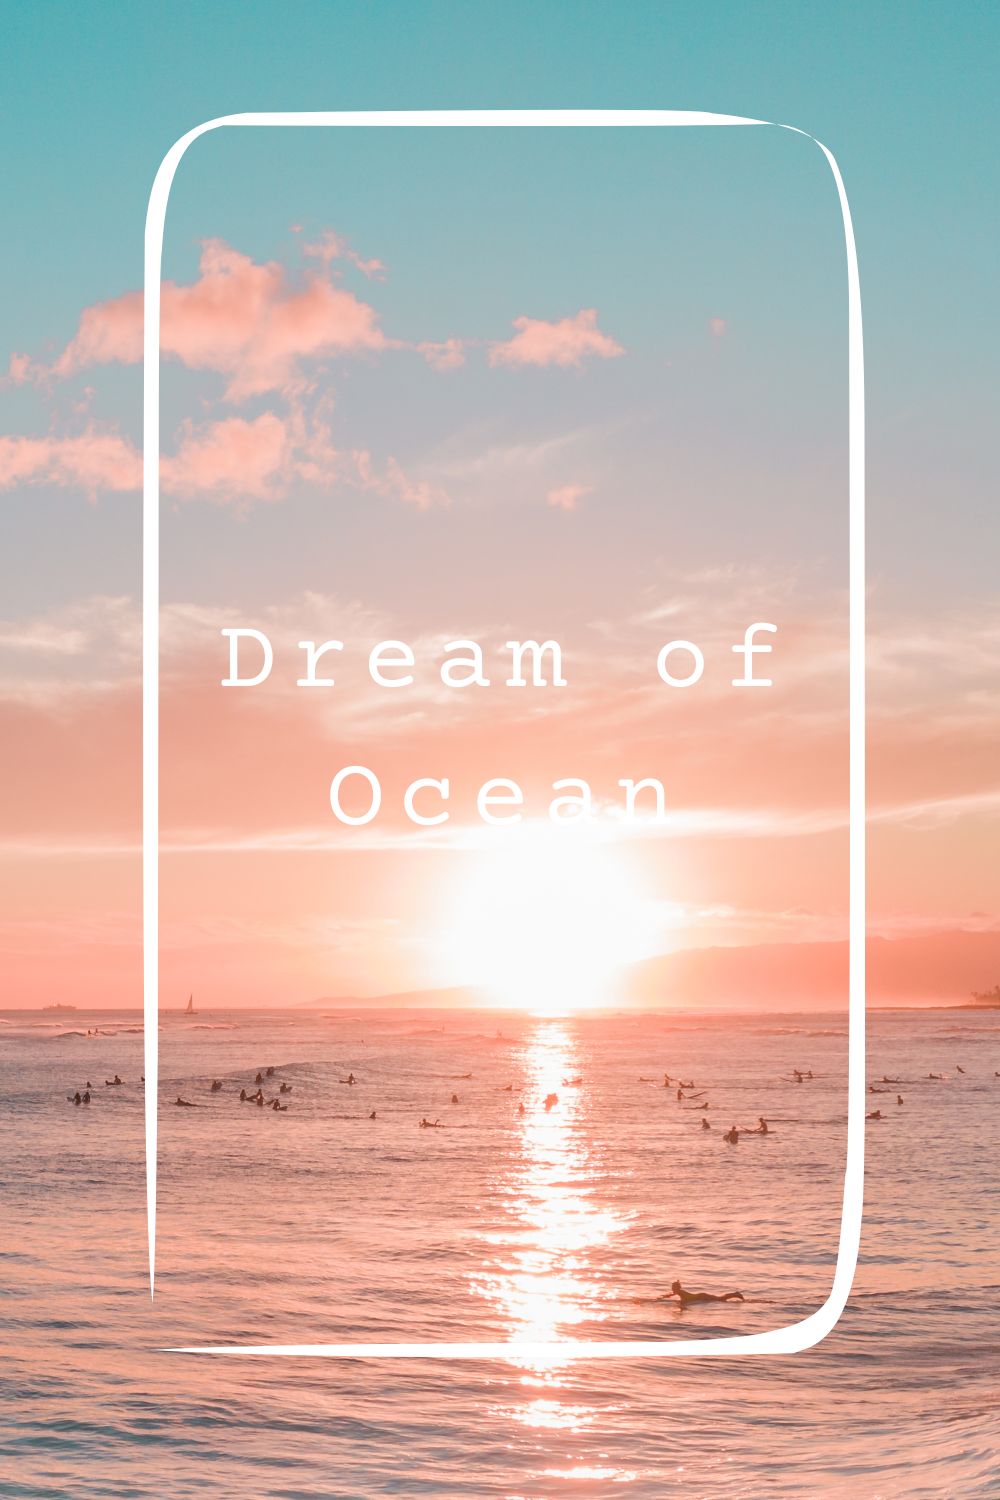 12 Dream of Ocean Meanings4